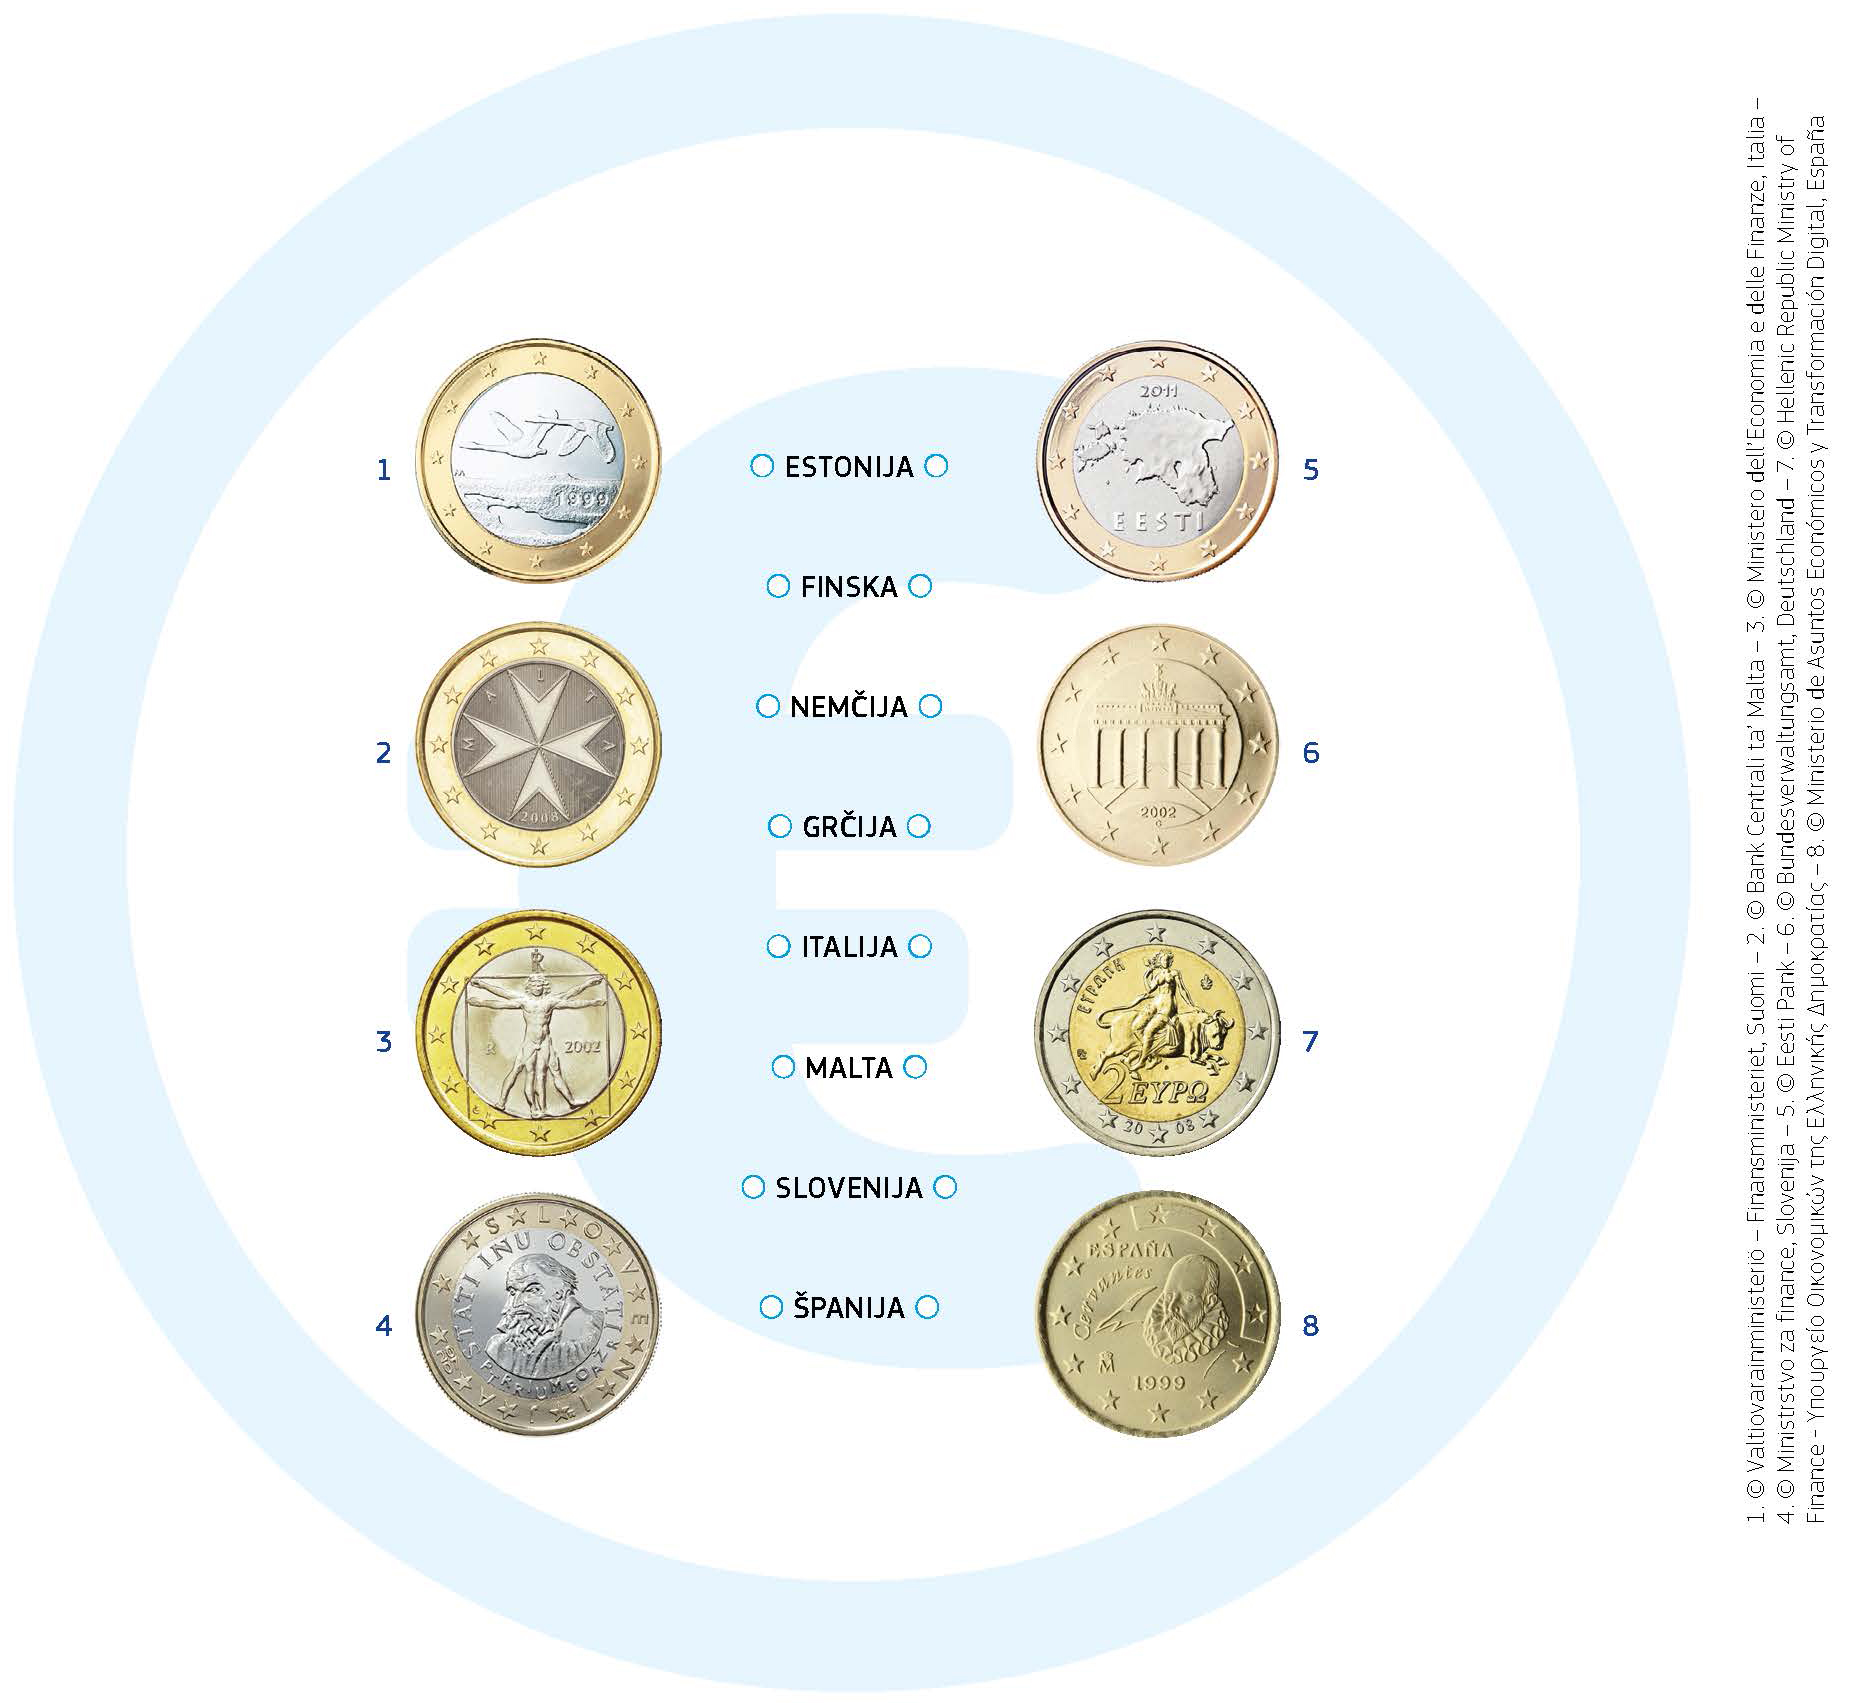 Na eni strani evrskih kovancev je zemljevid Evrope. Ta stran je enaka za vse države. Drugo stran oblikuje vsaka država sama. Nekaj primerov: Na finskem kovancu za 1 evro sta dva leteča laboda. Na malteških kovancih za 1 in 2 evra je upodobljen emblem, imenovan malteški križ. Italijanski kovanci za 1 evro prikazujejo slavno risbo Leonarda da Vincija, ki prikazuje idealna sorazmerja človeškega telesa. Grški kovanec za 2 evra upodablja Evropo, ki jo ugrablja Zeus v podobi bika. Evropa je lik iz grške mitologije, po katerem je Evropa dobila ime.